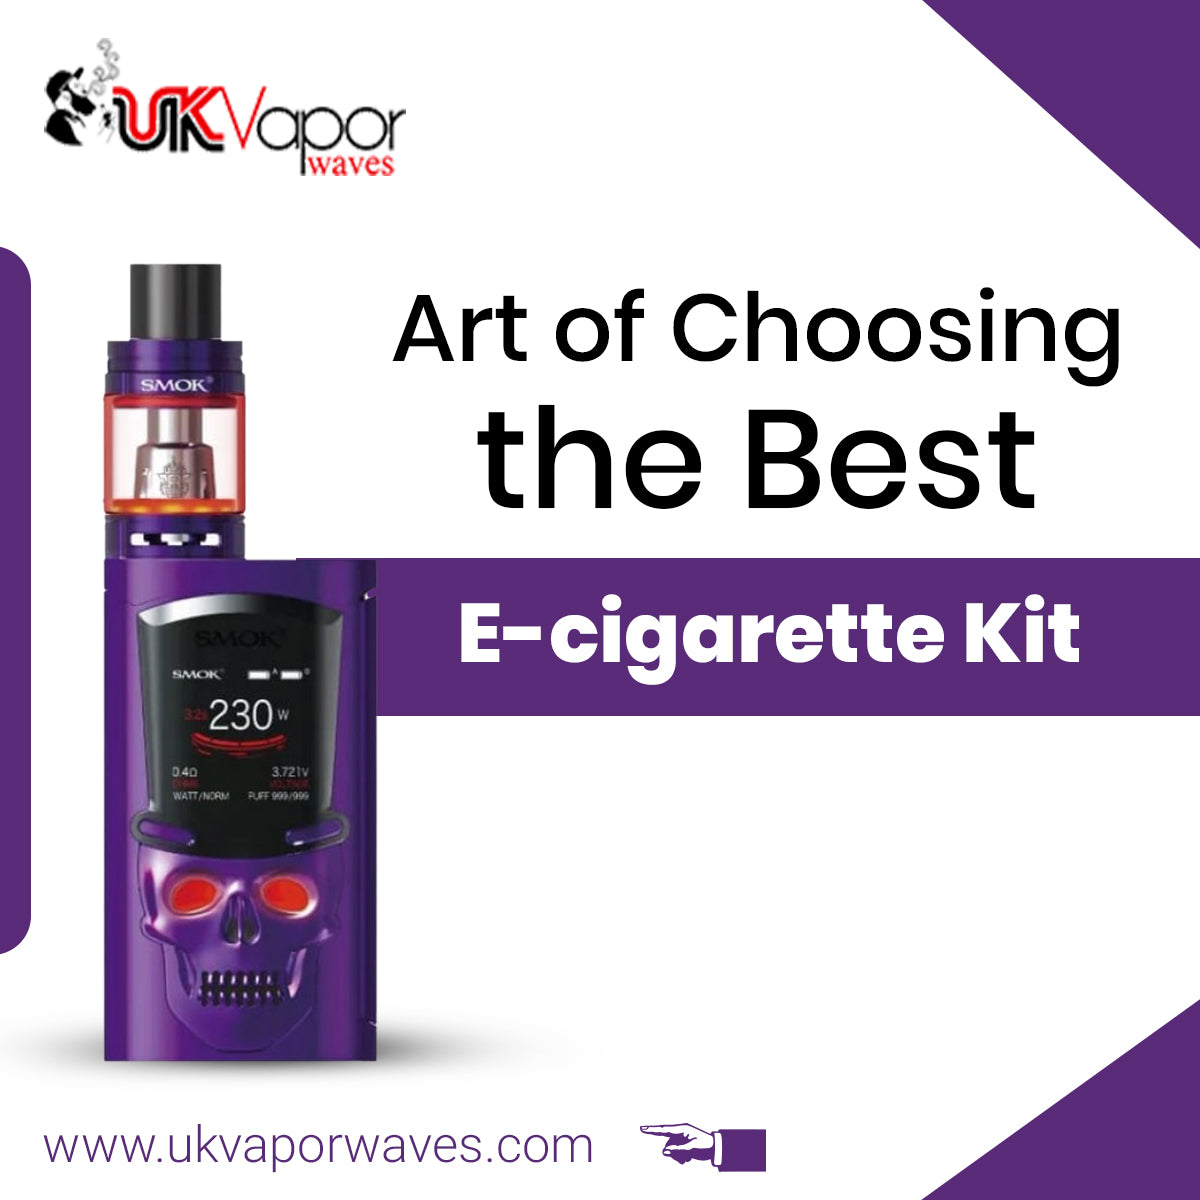 Art of Choosing the Best E-cigarette Kit